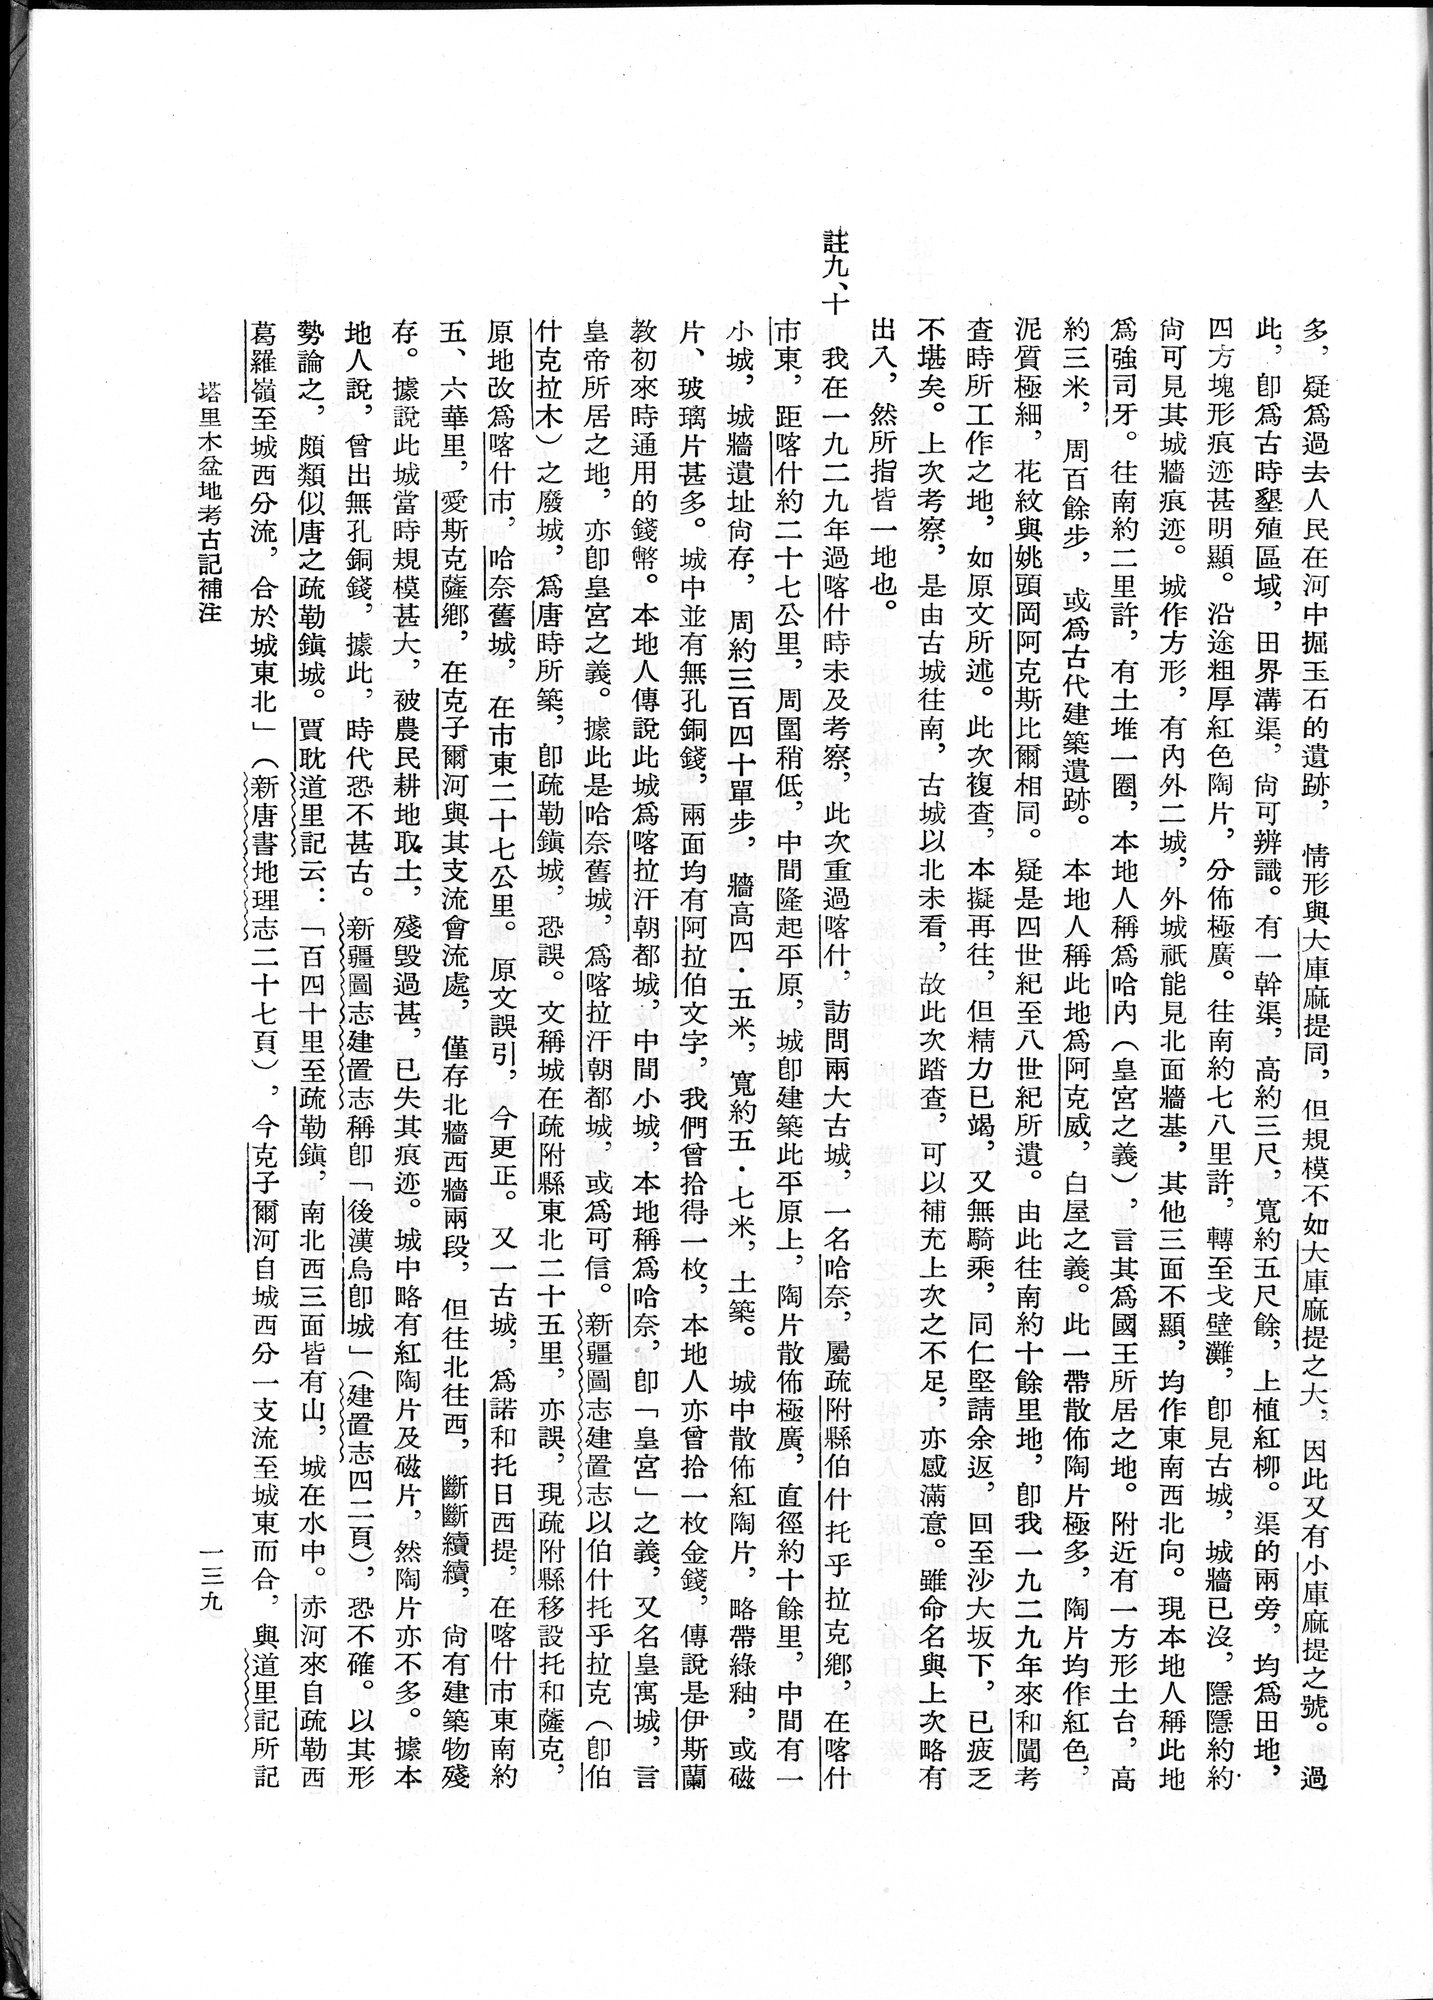 塔里木盆地考古記 : vol.1 / Page 203 (Grayscale High Resolution Image)